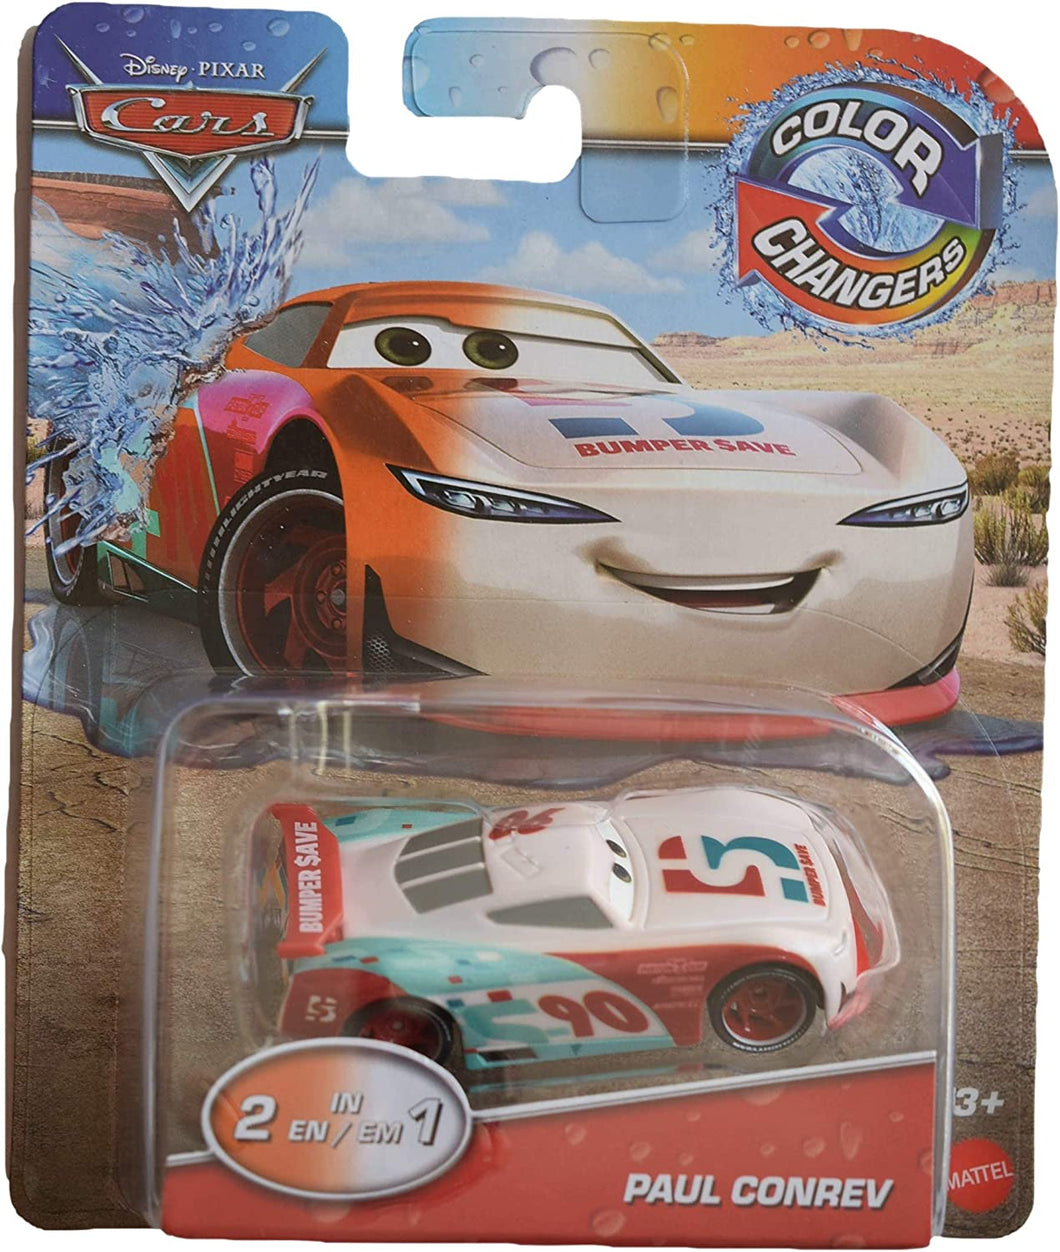 Disney Cars Pixar Color Changers Paul Conrev